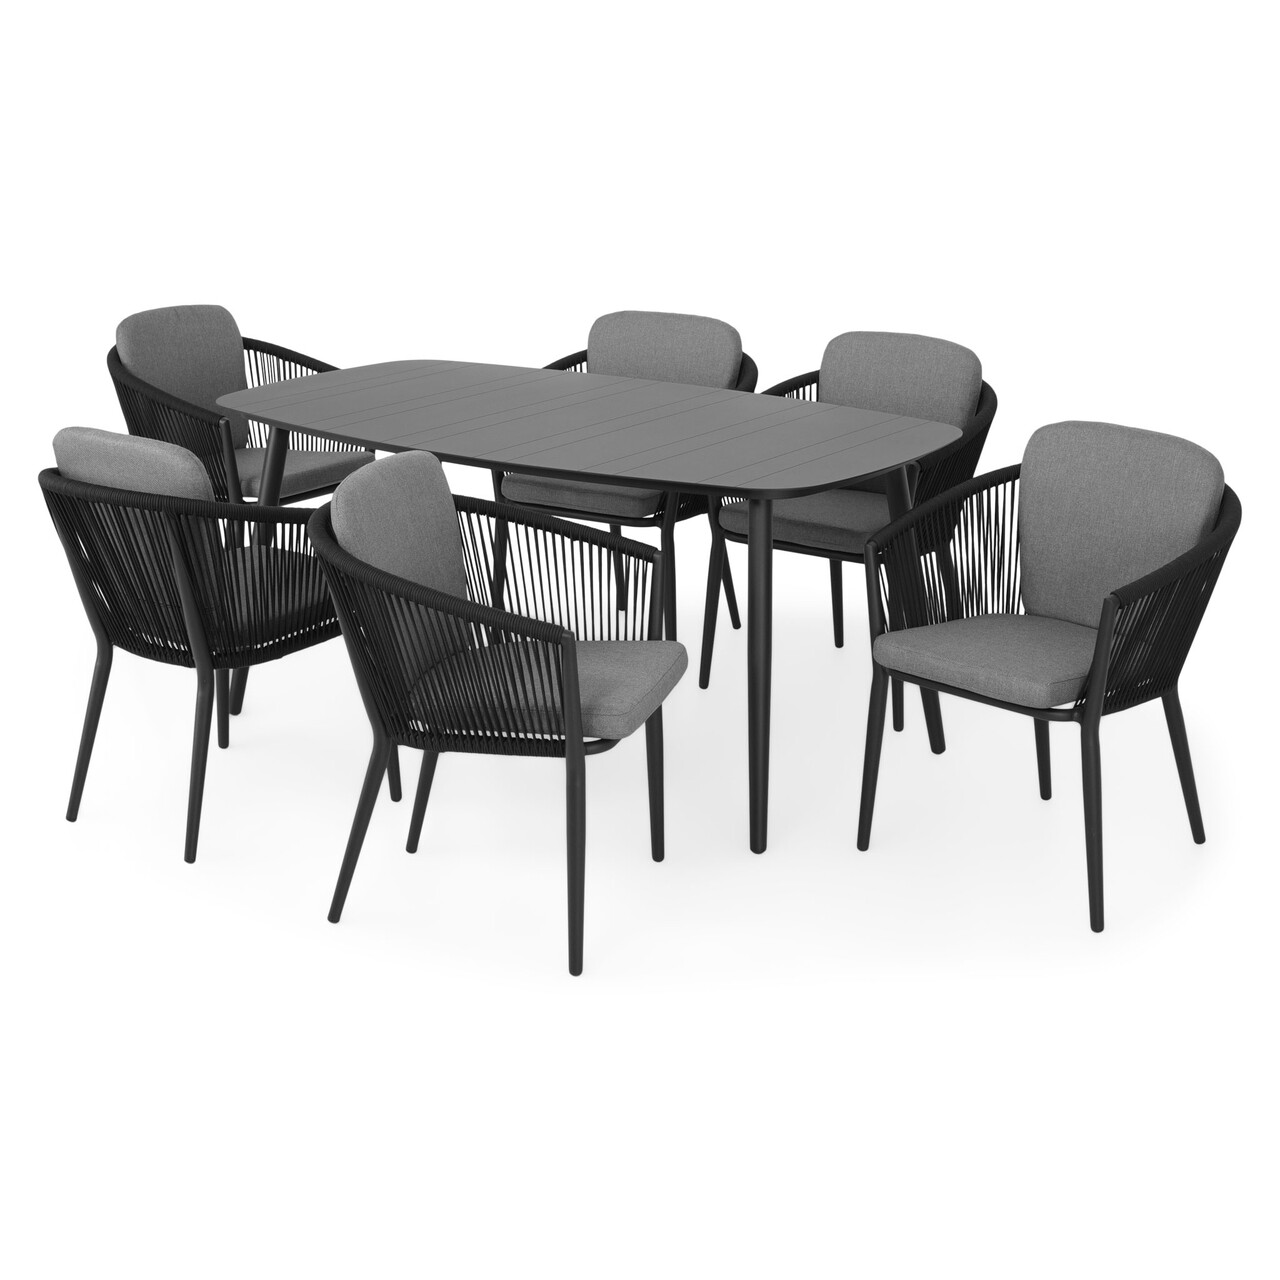 Maison orso 6 db szék és asztal, alumínium, fekete/szürke